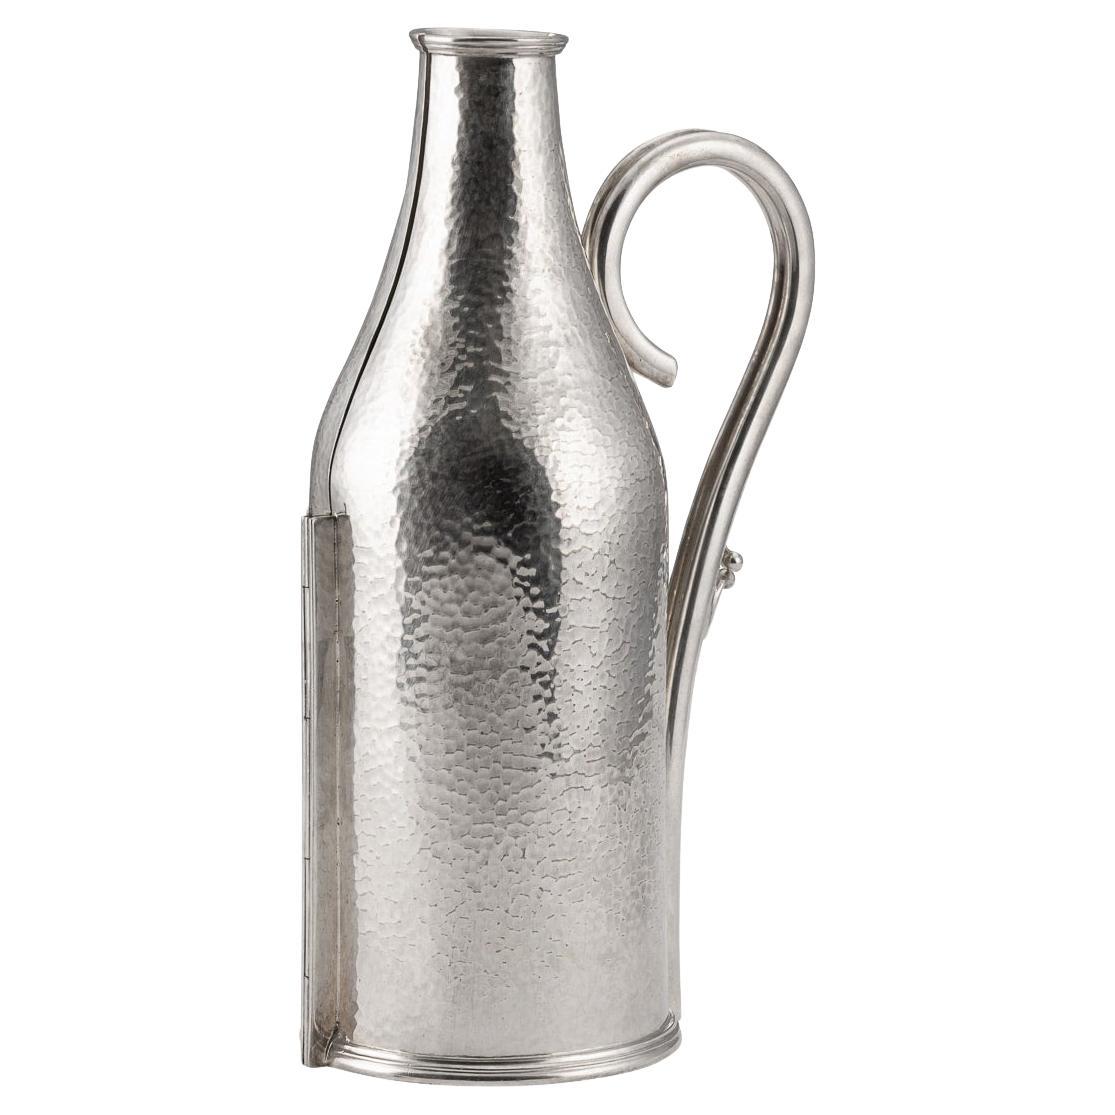 Porte-bouteilles en métal argenté anglais du 20ème siècle par Mappin & Webb, vers 1930